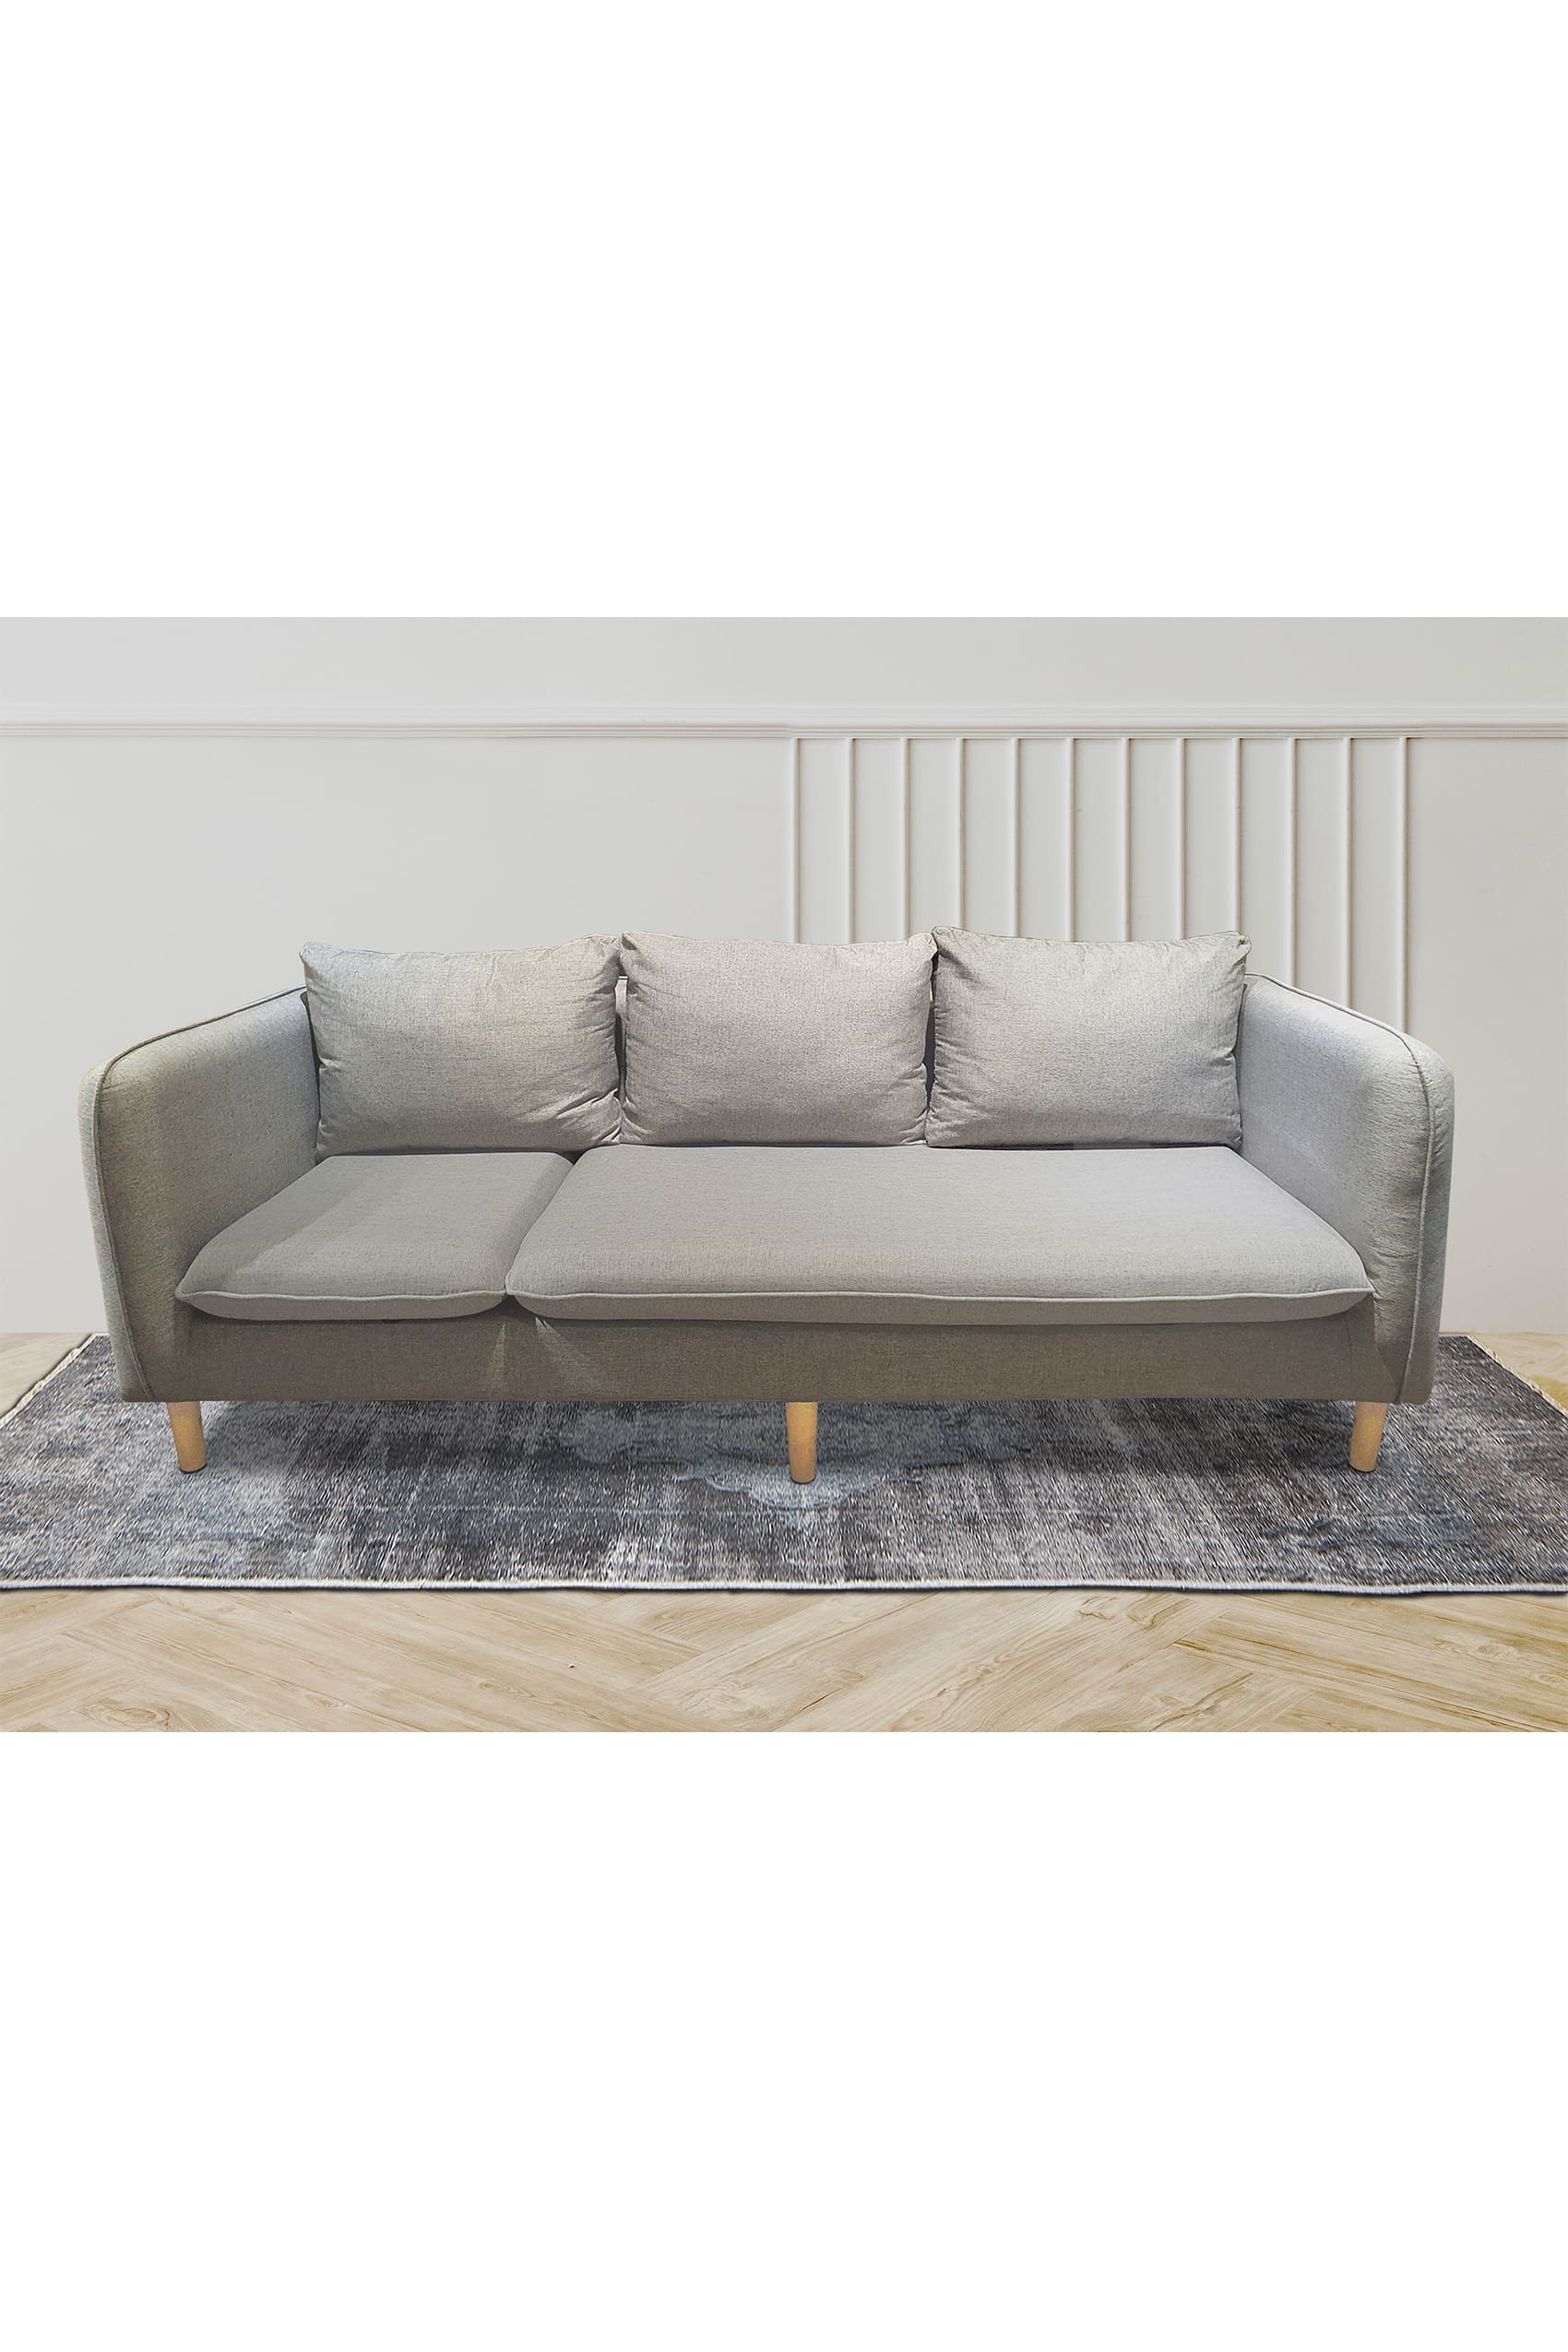 Capella Fabric 3 Seater Sofa With Ottoman